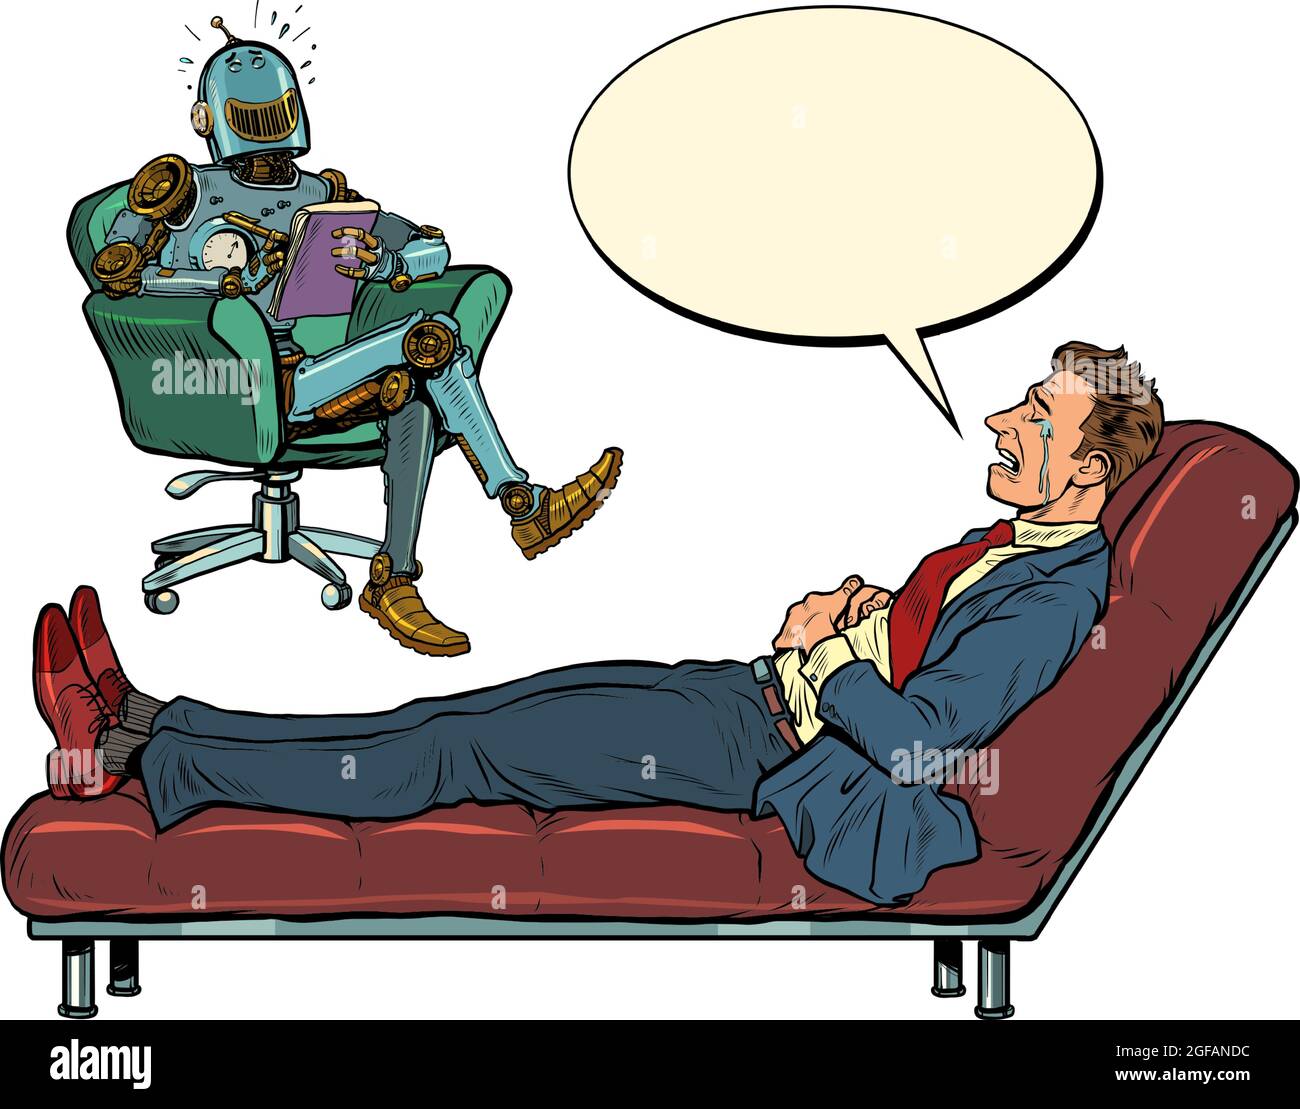 Un robot psychothérapeute lors d'une séance de psychothérapie avec un patient, rit et écoute un homme d'affaires, s'assoit dans une chaise et prend des notes dans un bloc-notes Illustration de Vecteur